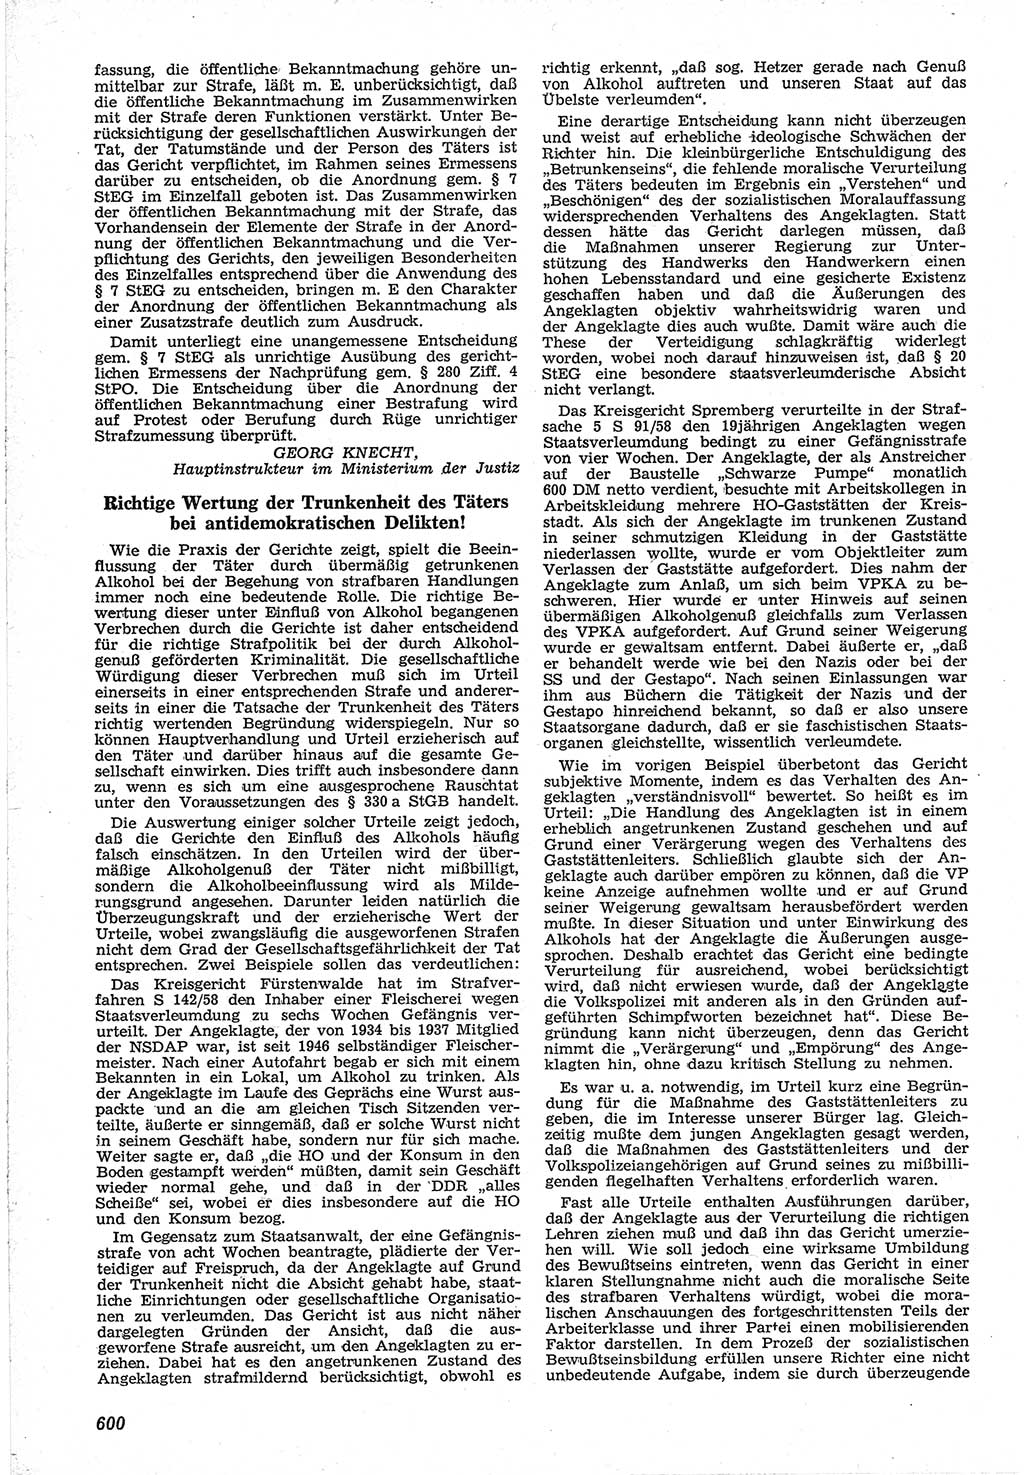 Neue Justiz (NJ), Zeitschrift für Recht und Rechtswissenschaft [Deutsche Demokratische Republik (DDR)], 12. Jahrgang 1958, Seite 600 (NJ DDR 1958, S. 600)